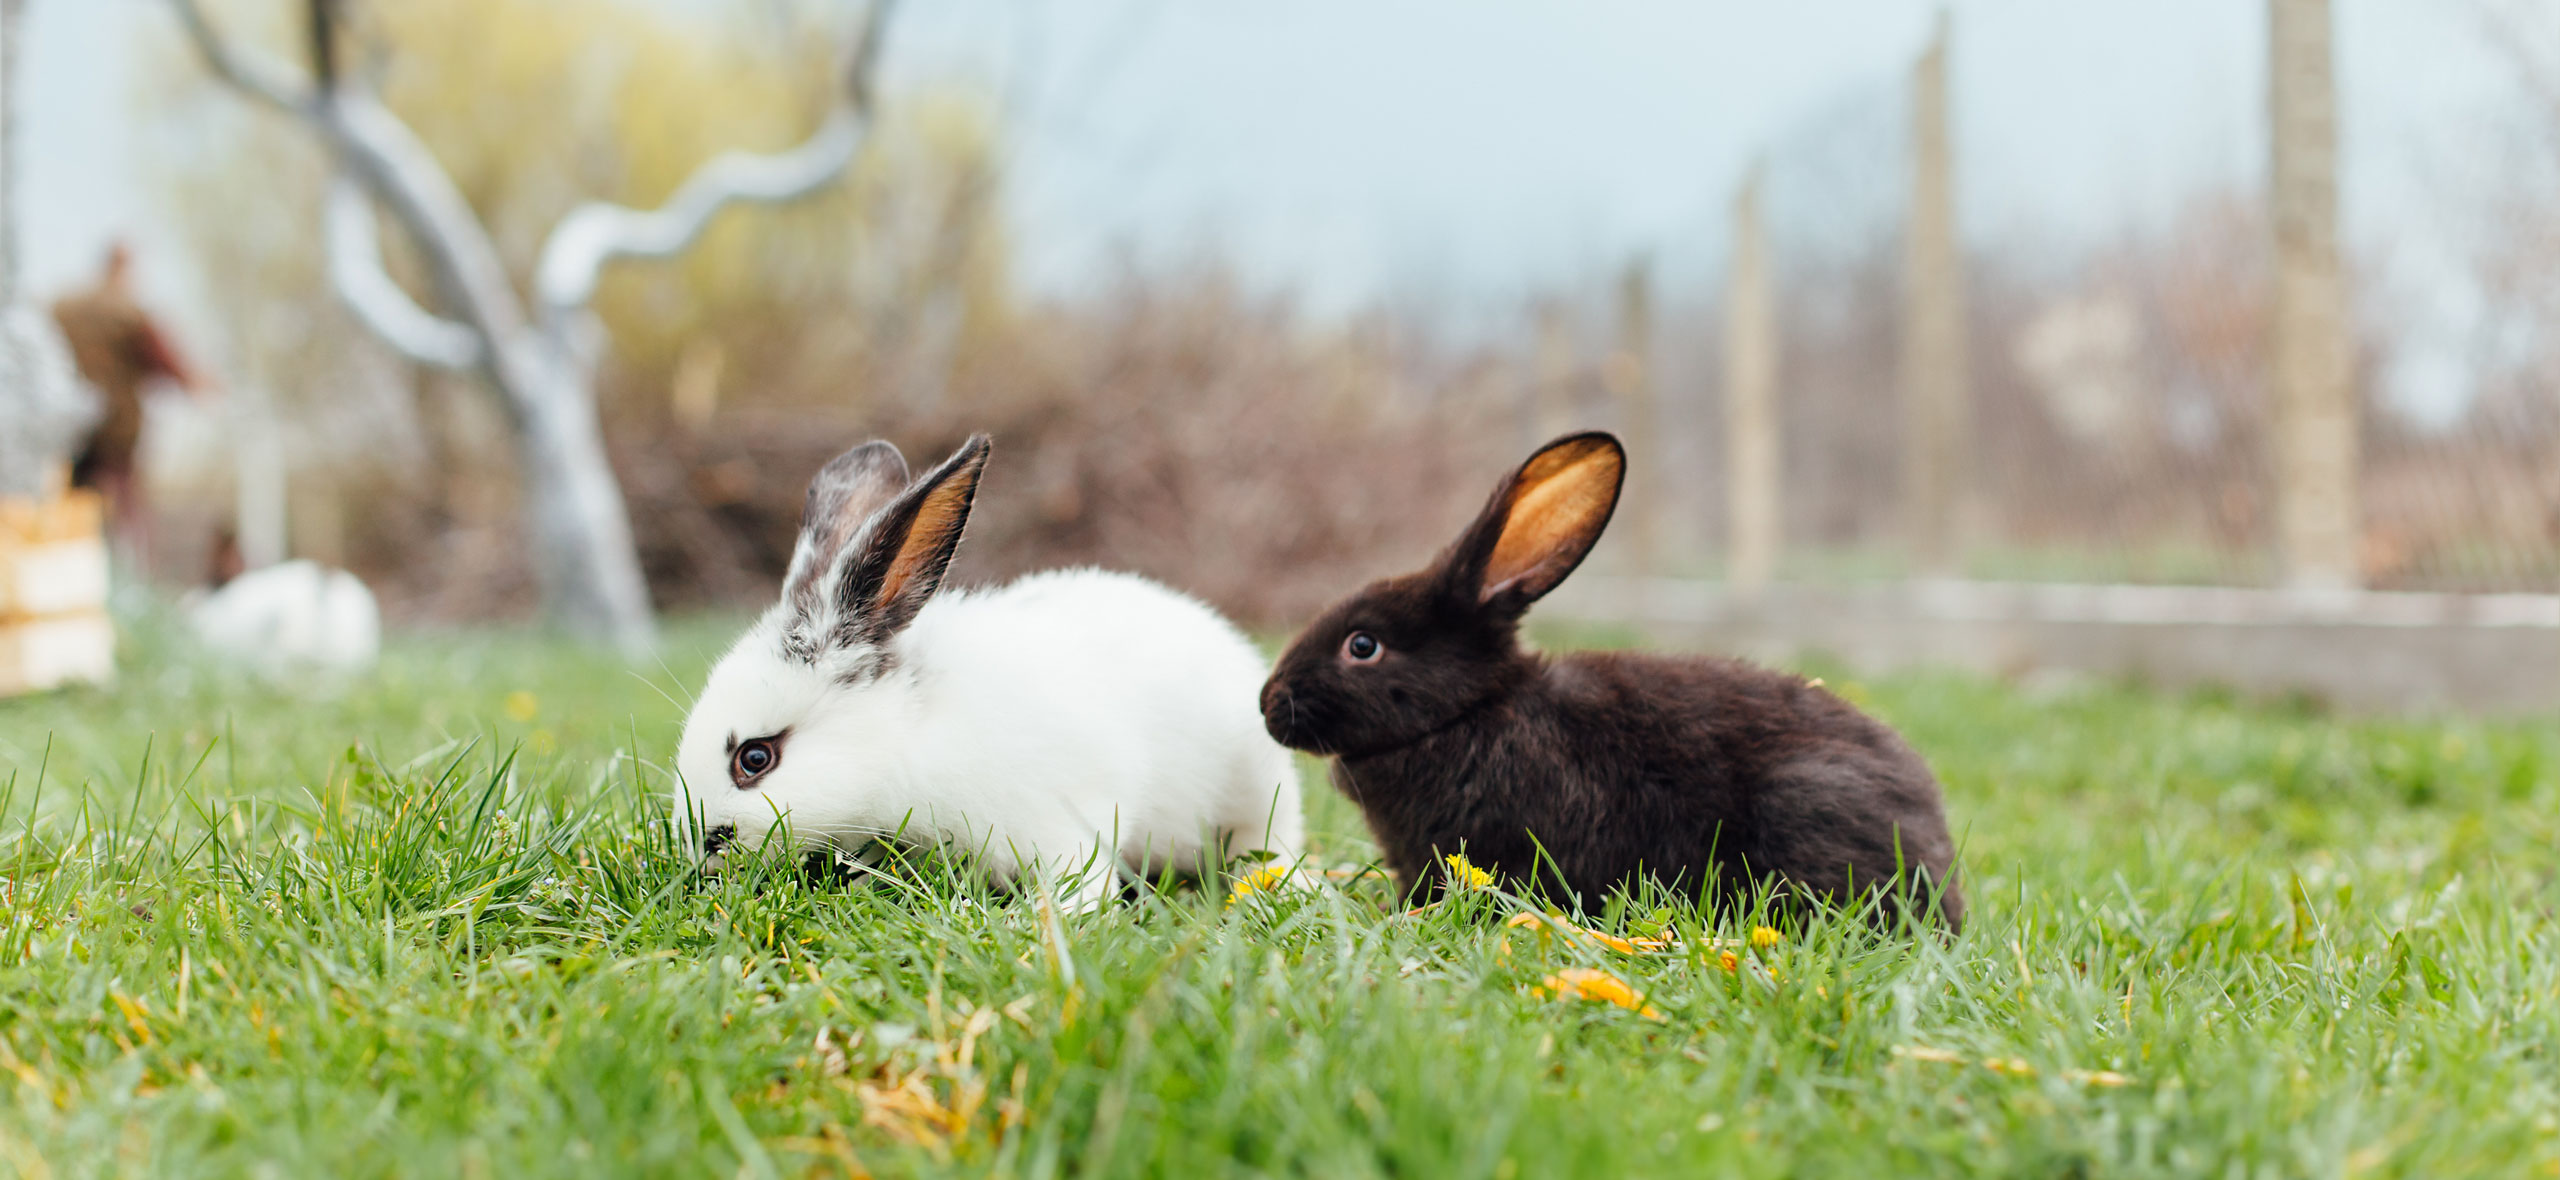 Препараты для лечения кроликов - чем лечить кроликов?